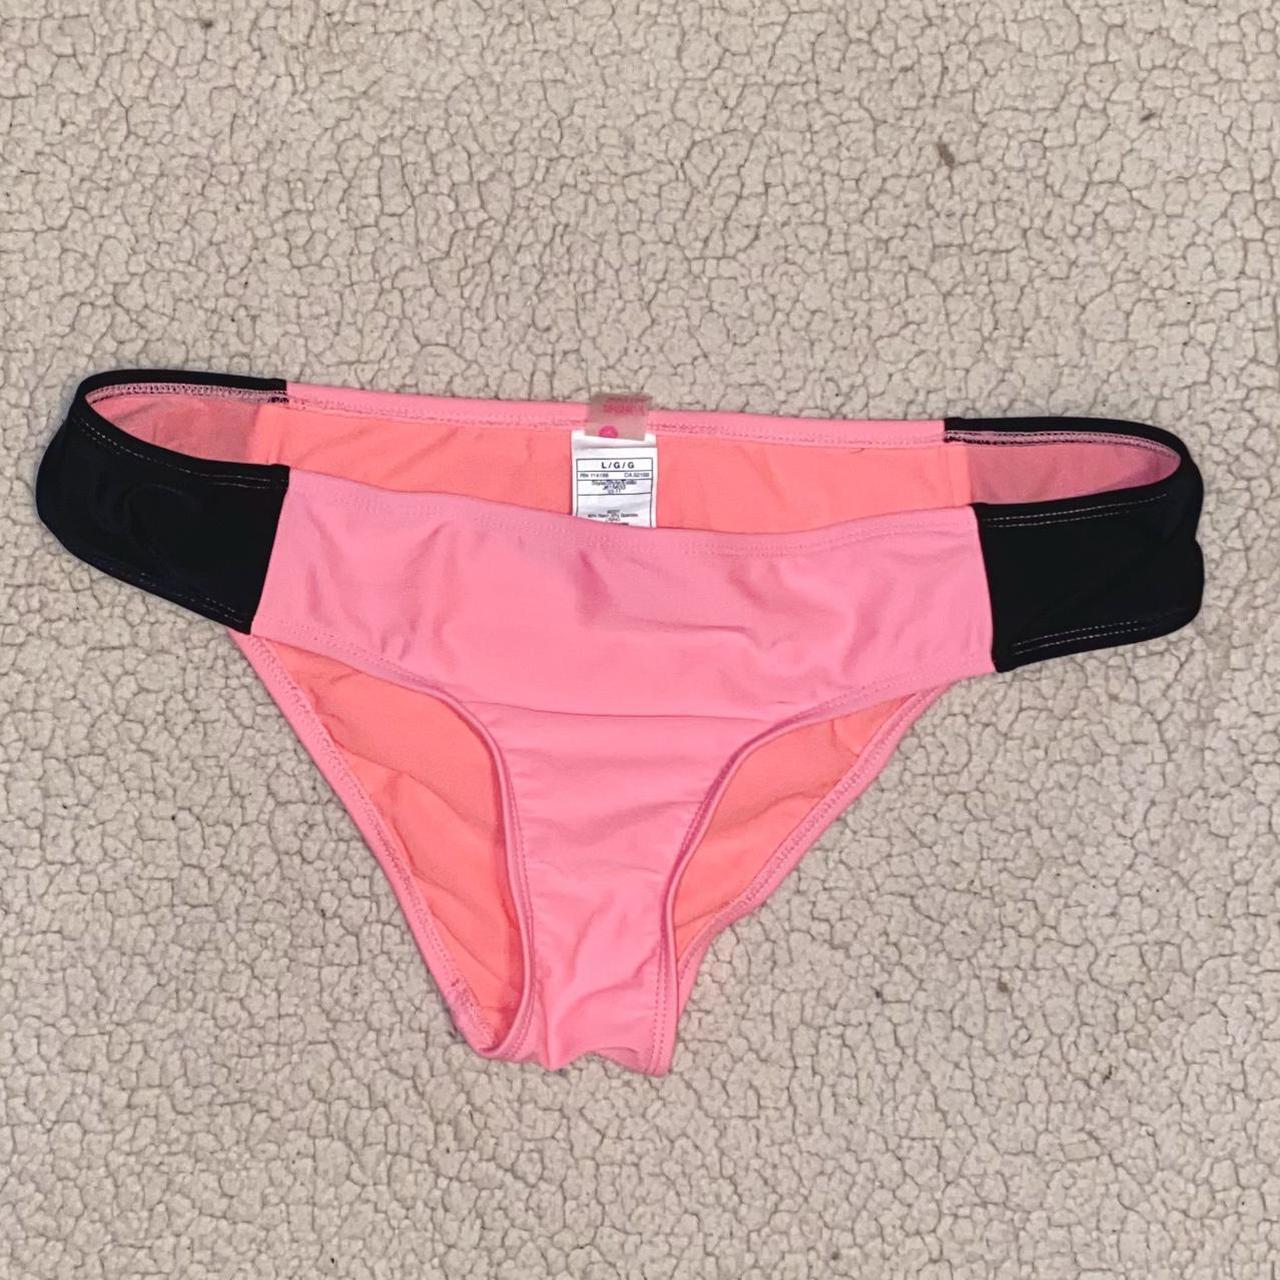 roxy bikini bottom 🌺 -size L -it's in great... - Depop